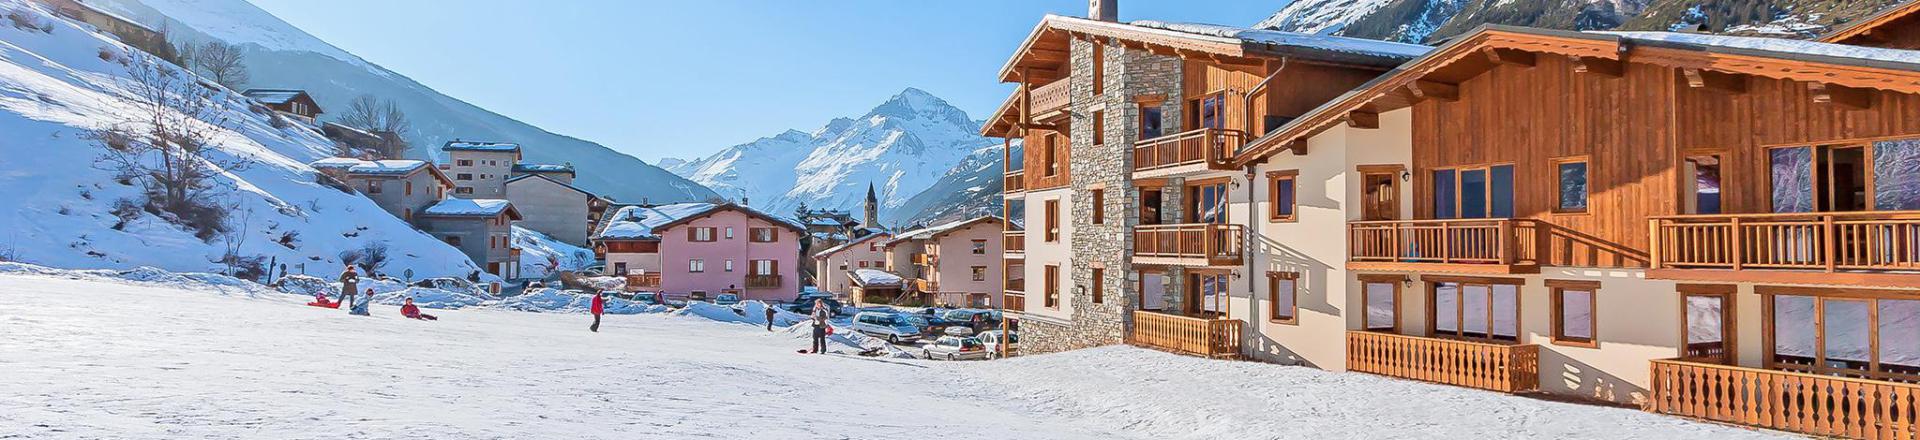 Location au ski Les Balcons de Val Cenis Village - Val Cenis - Extérieur hiver